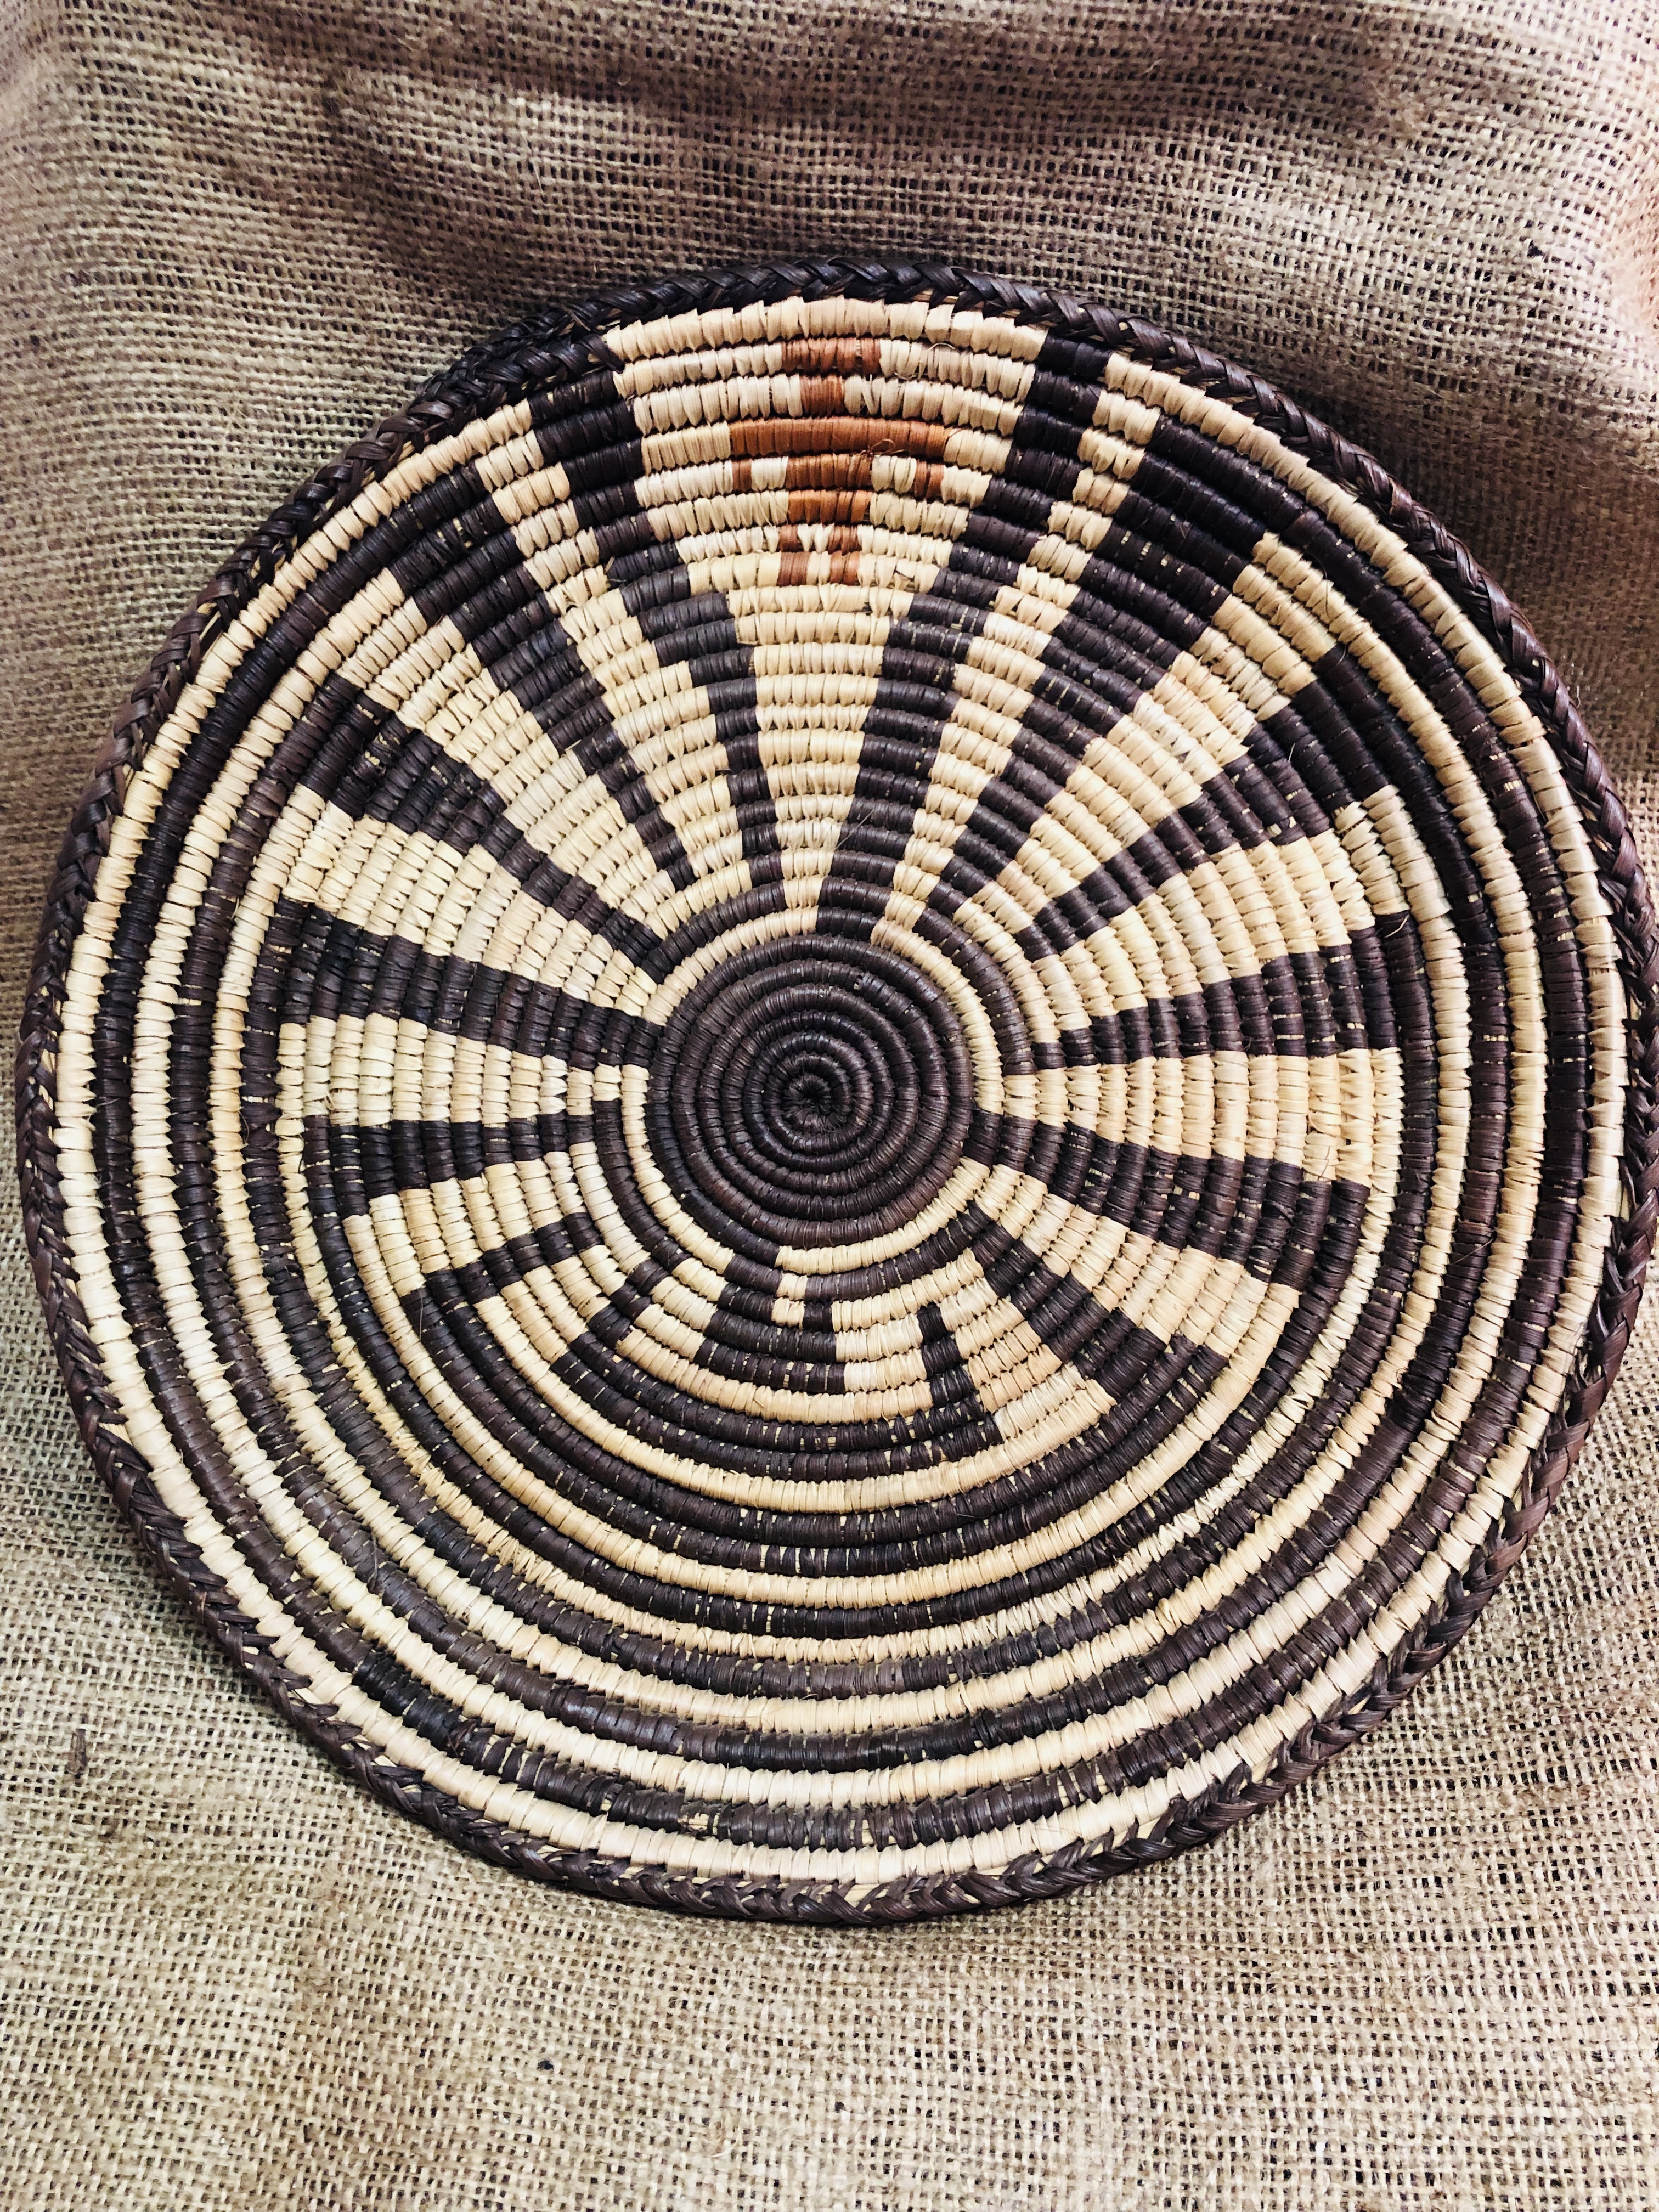 Man in the Maze Pima Basket – Cahokia Mounds3024 x 4032